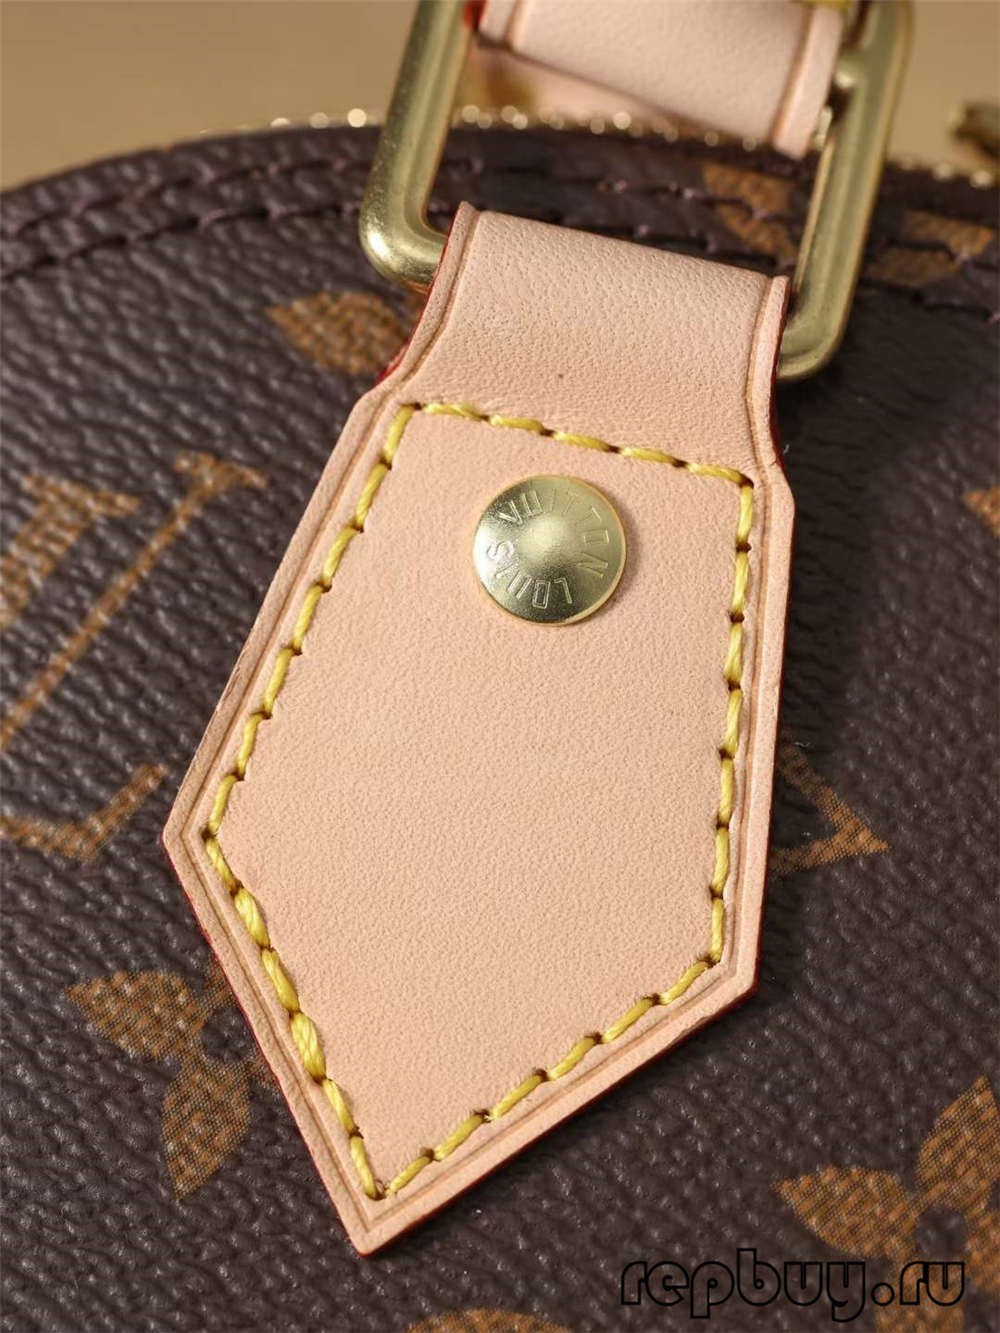 Louis Vuitton M53152 Alma BB высакаякасныя копіі сумак (2022 абноўлена) - Інтэрнэт-крама падробленай сумкі Louis Vuitton, копія дызайнерскай сумкі ru